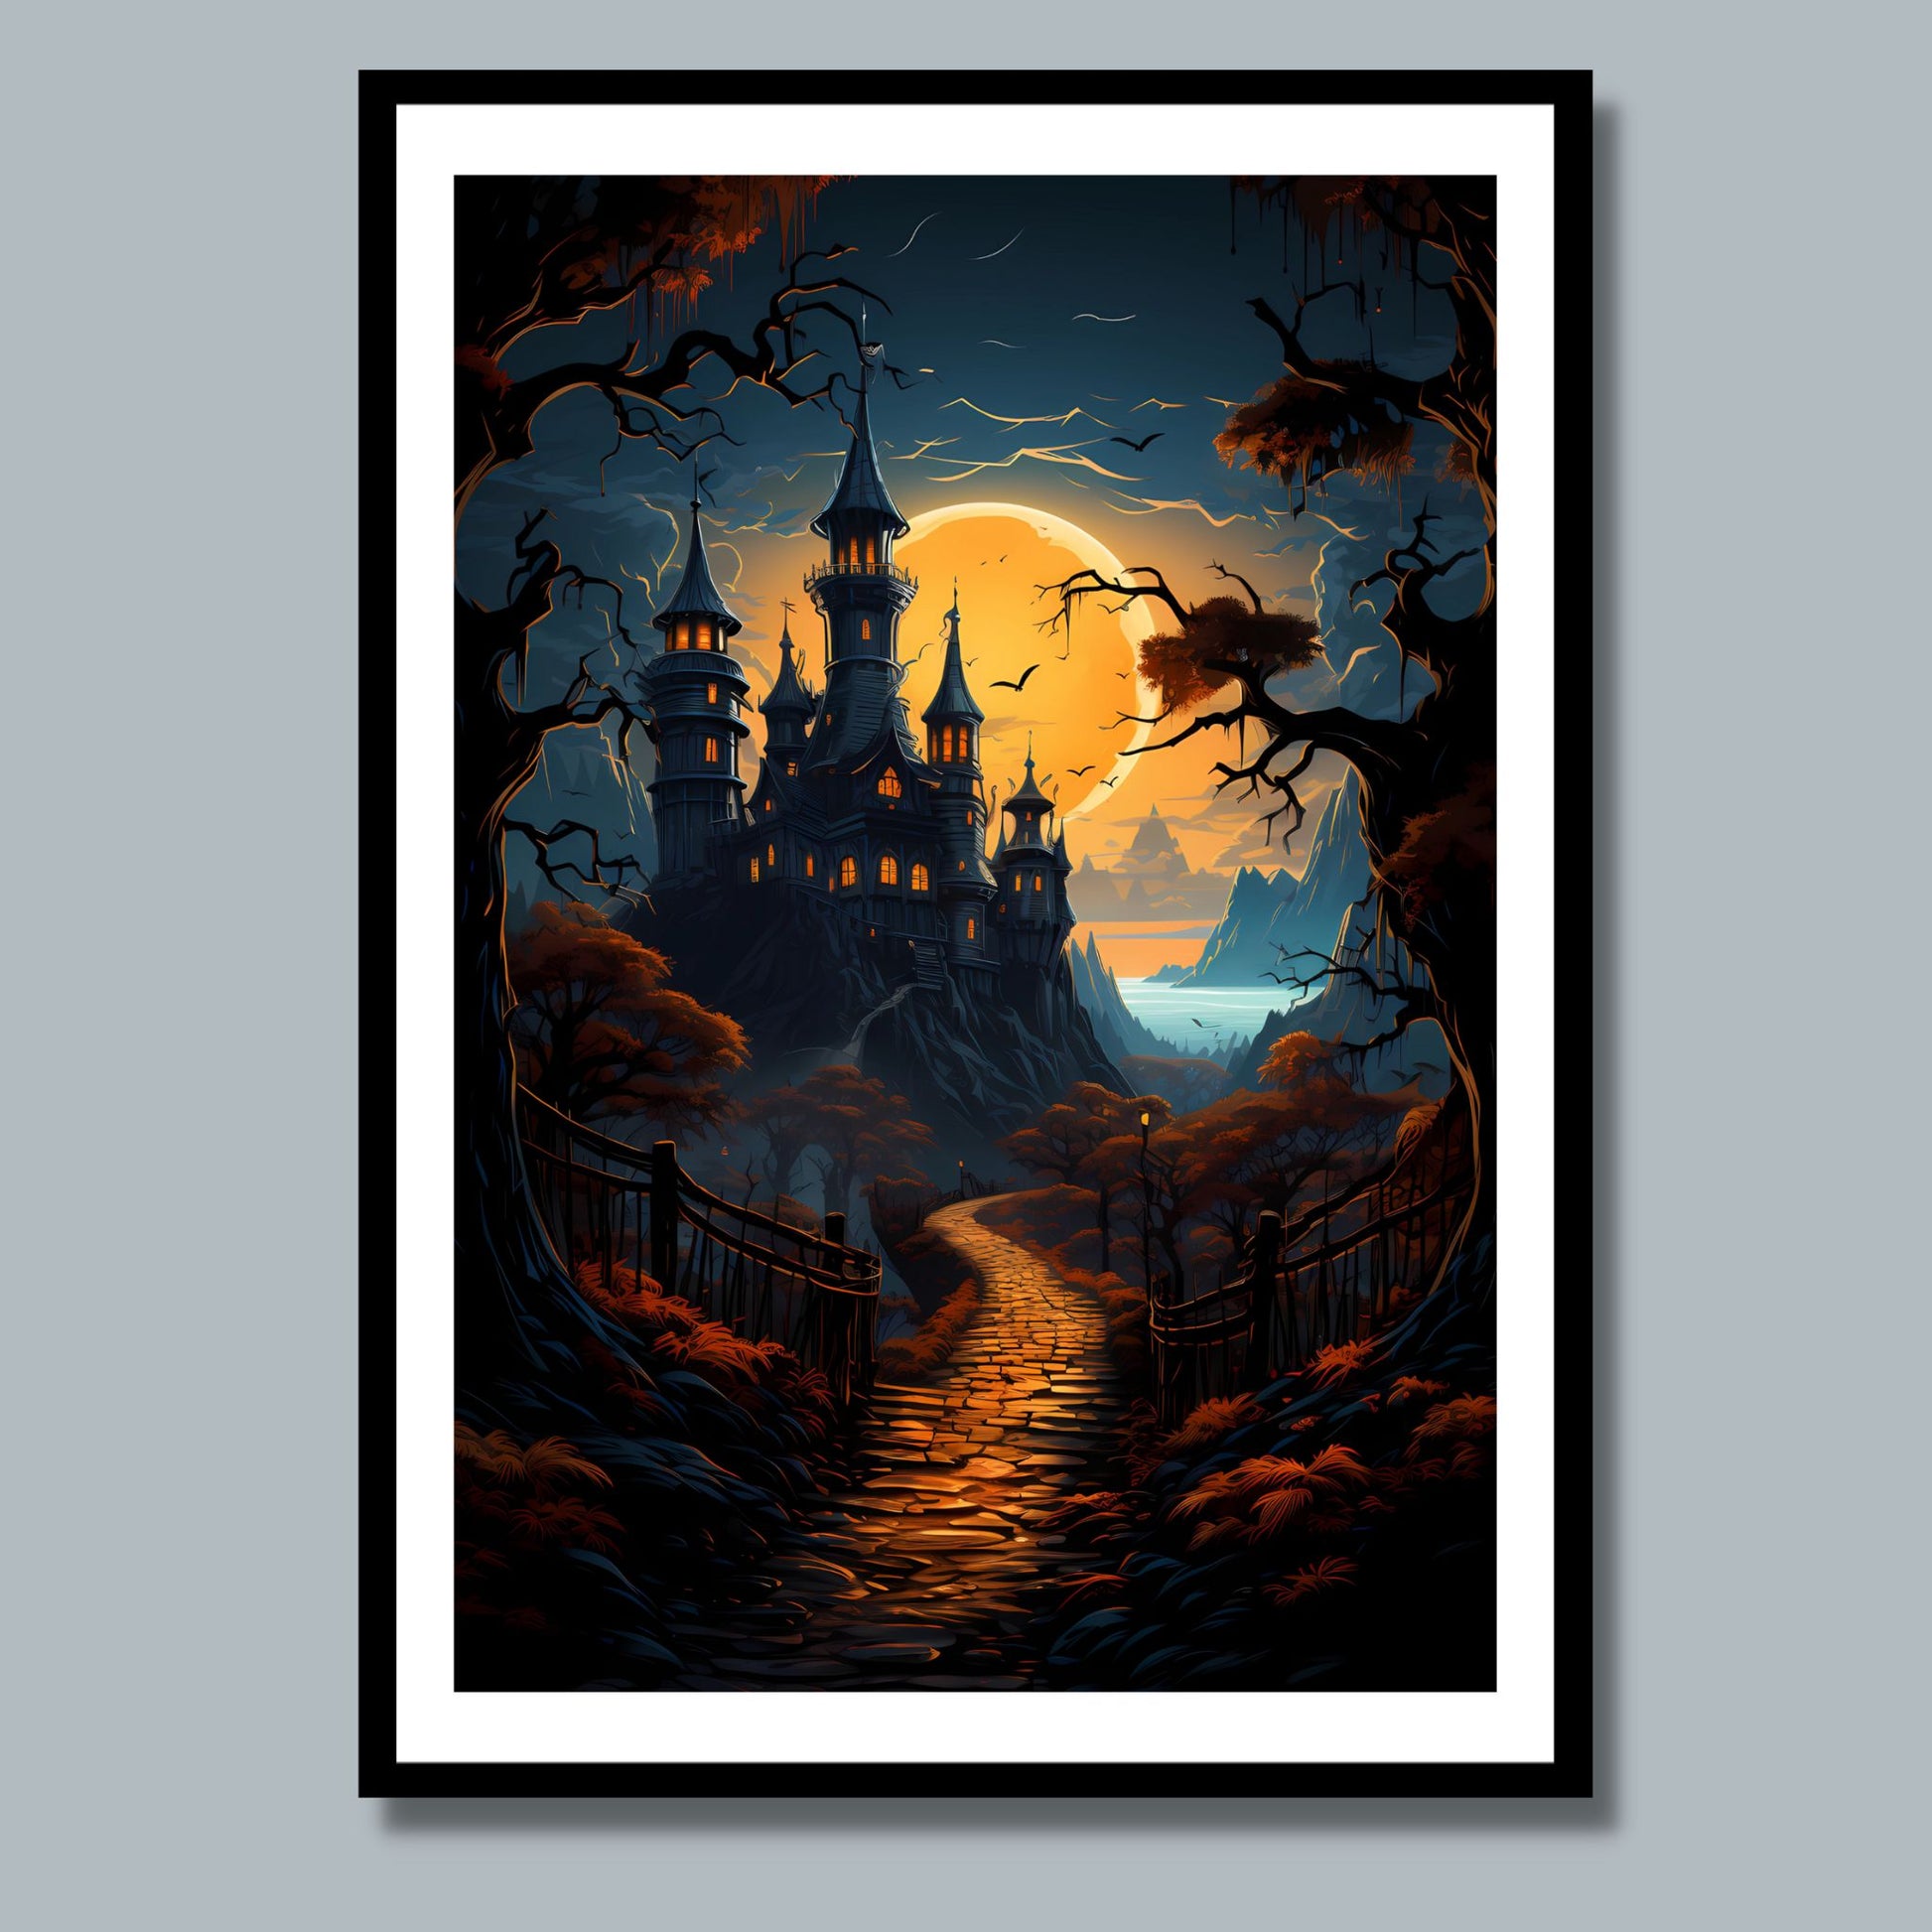 Creepy plakat med motiv av Halloween slott ved fullmåne. Motivet viser nattmørke og lys i vinduene. Bildet som har en hvit kant, er rammet inn i sort ramme og henger på en vegg.